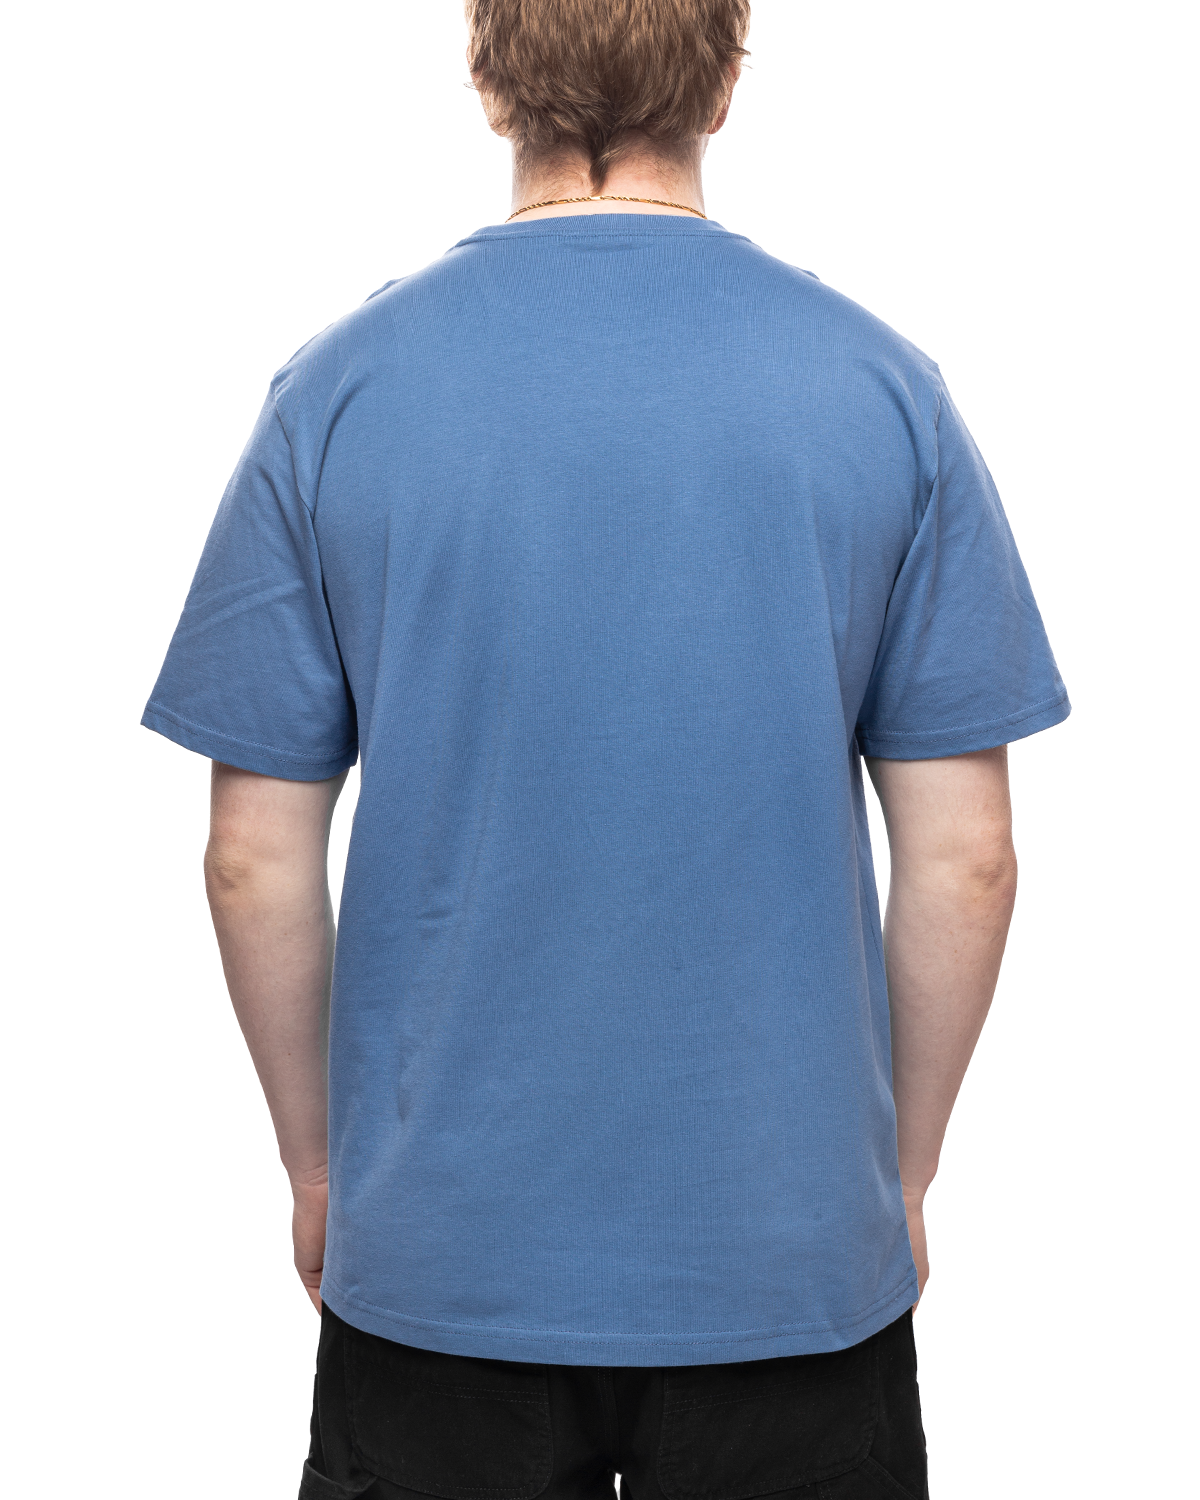 S/S Pocket T-Shirt Sorrent